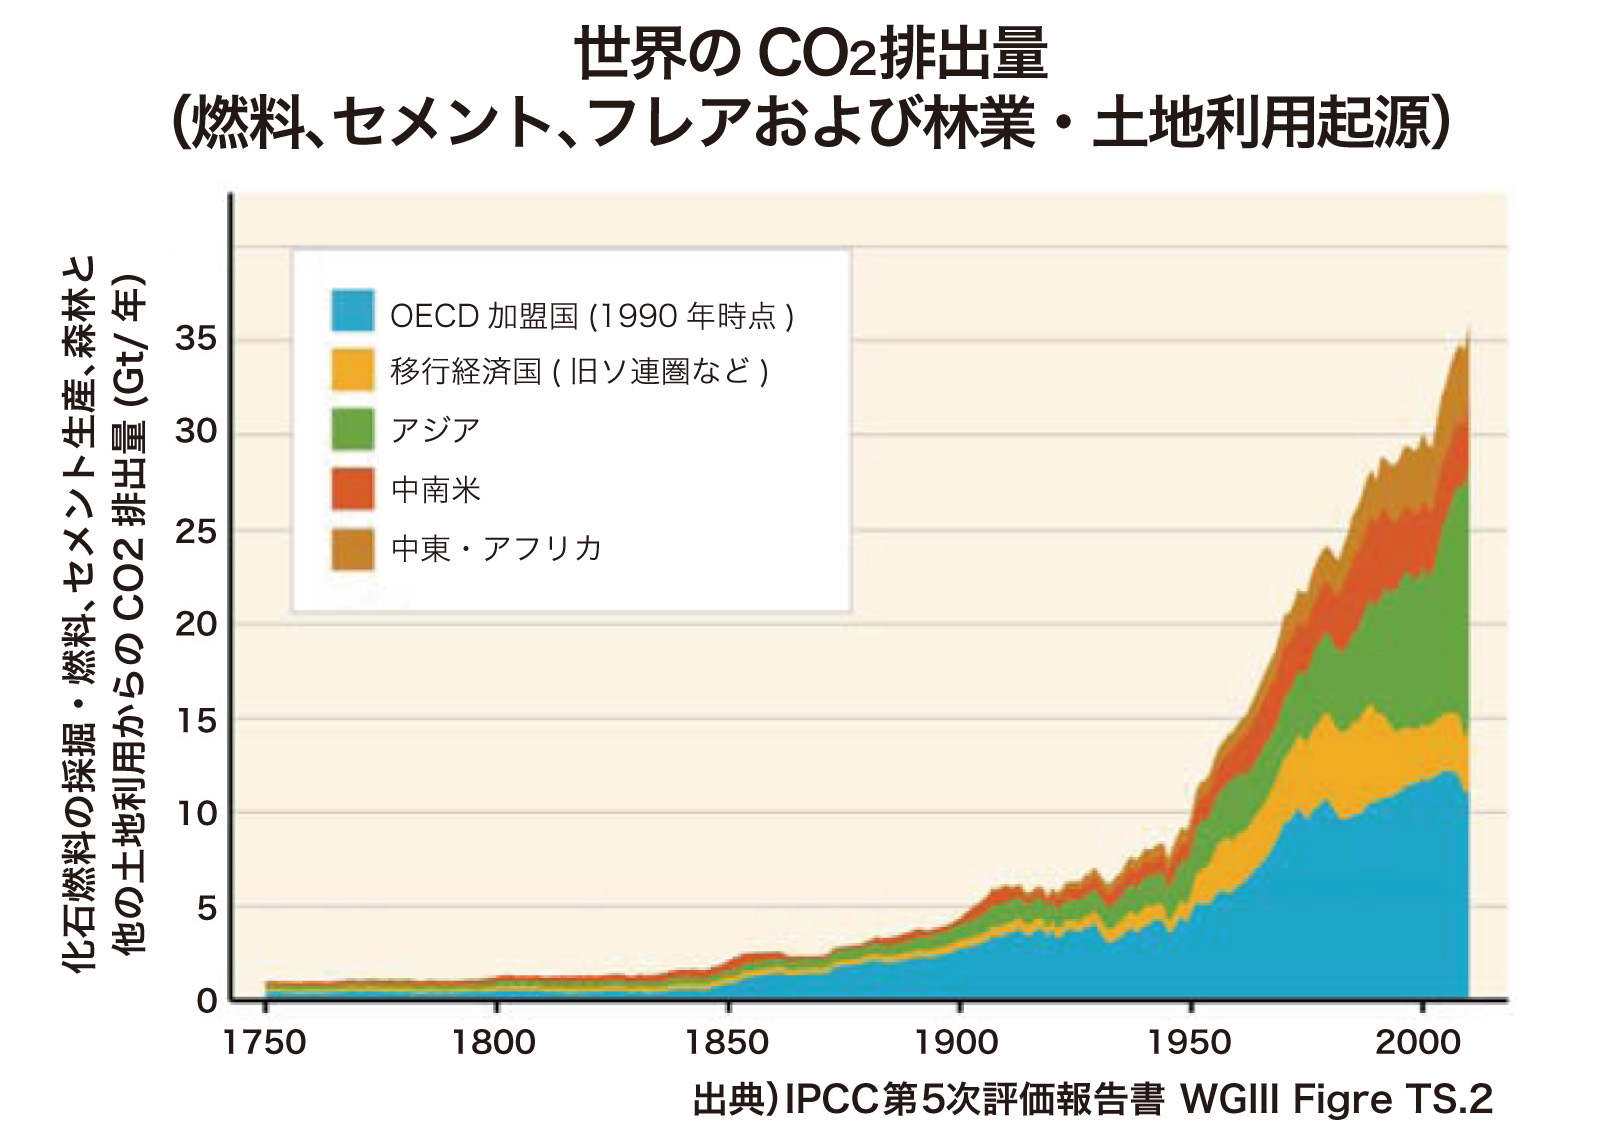 世界の年代別CO2排出量（燃料、セメント、フレアおよび林業・土地利用期限）